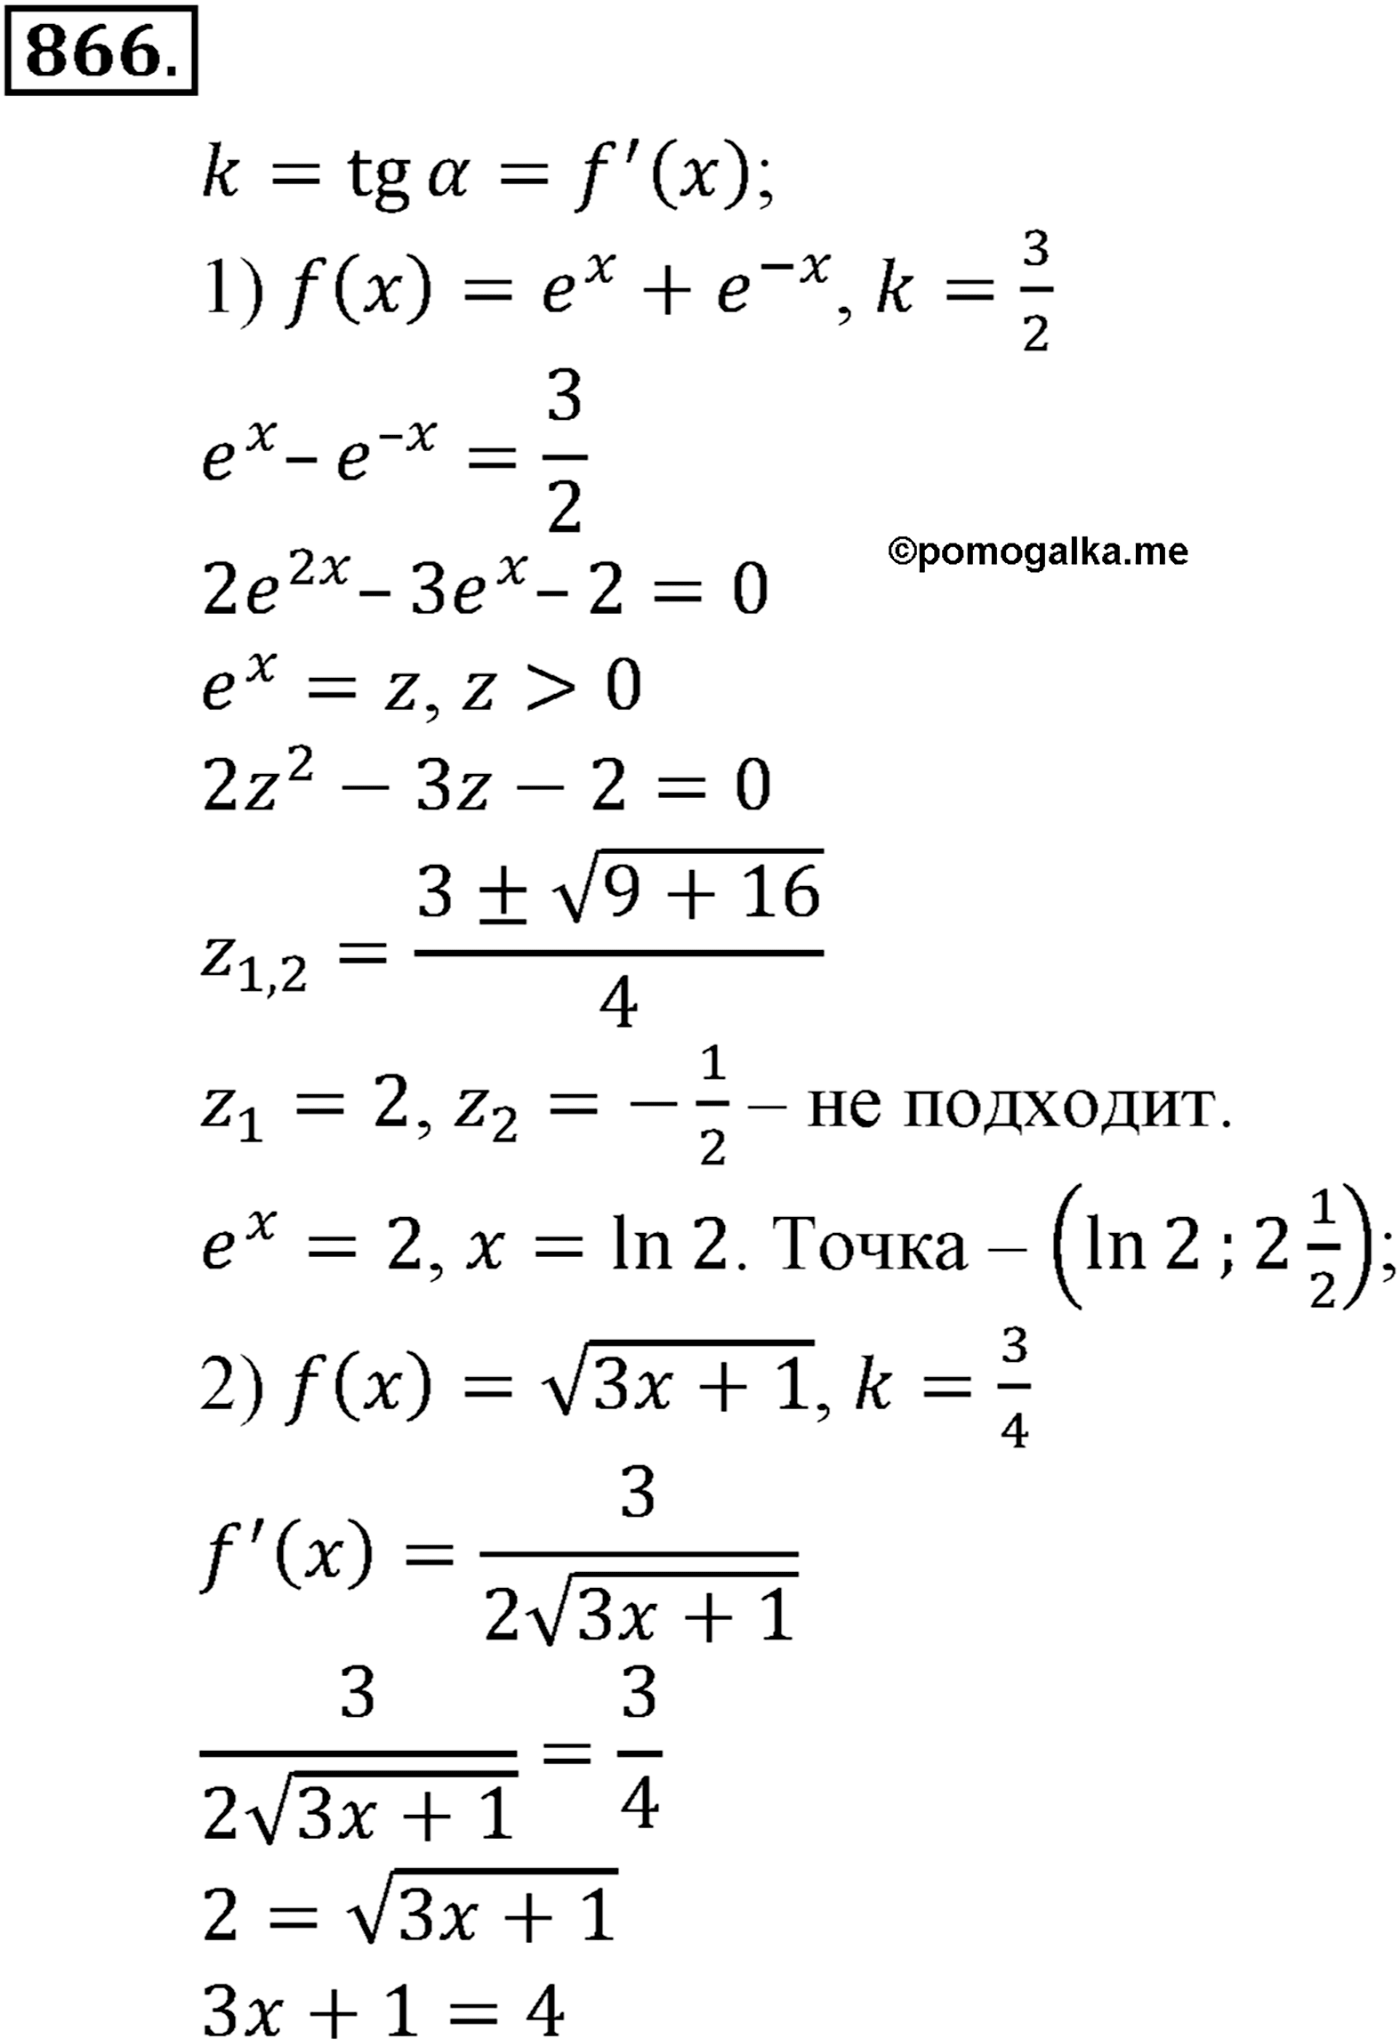 разбор задачи №866 по алгебре за 10-11 класс из учебника Алимова, Колягина